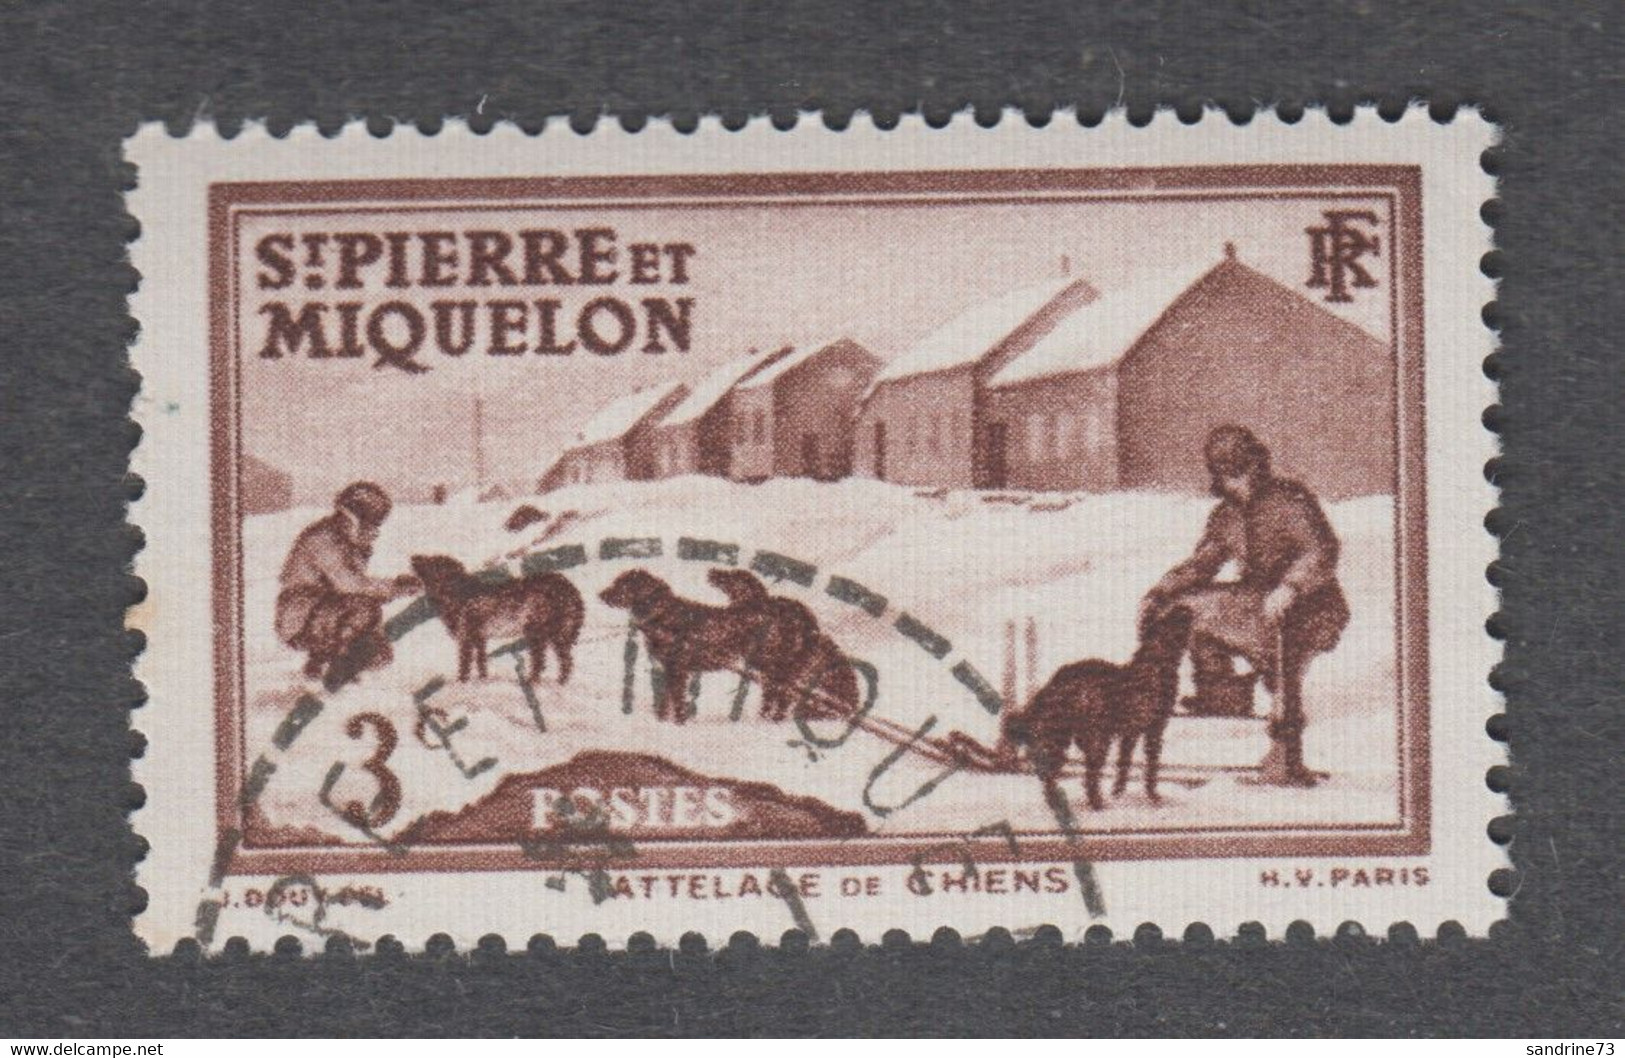 Colonies Françaises - St Pierre Et Miquelon - Timbre Oblitéré - N°168 - Oblitérés